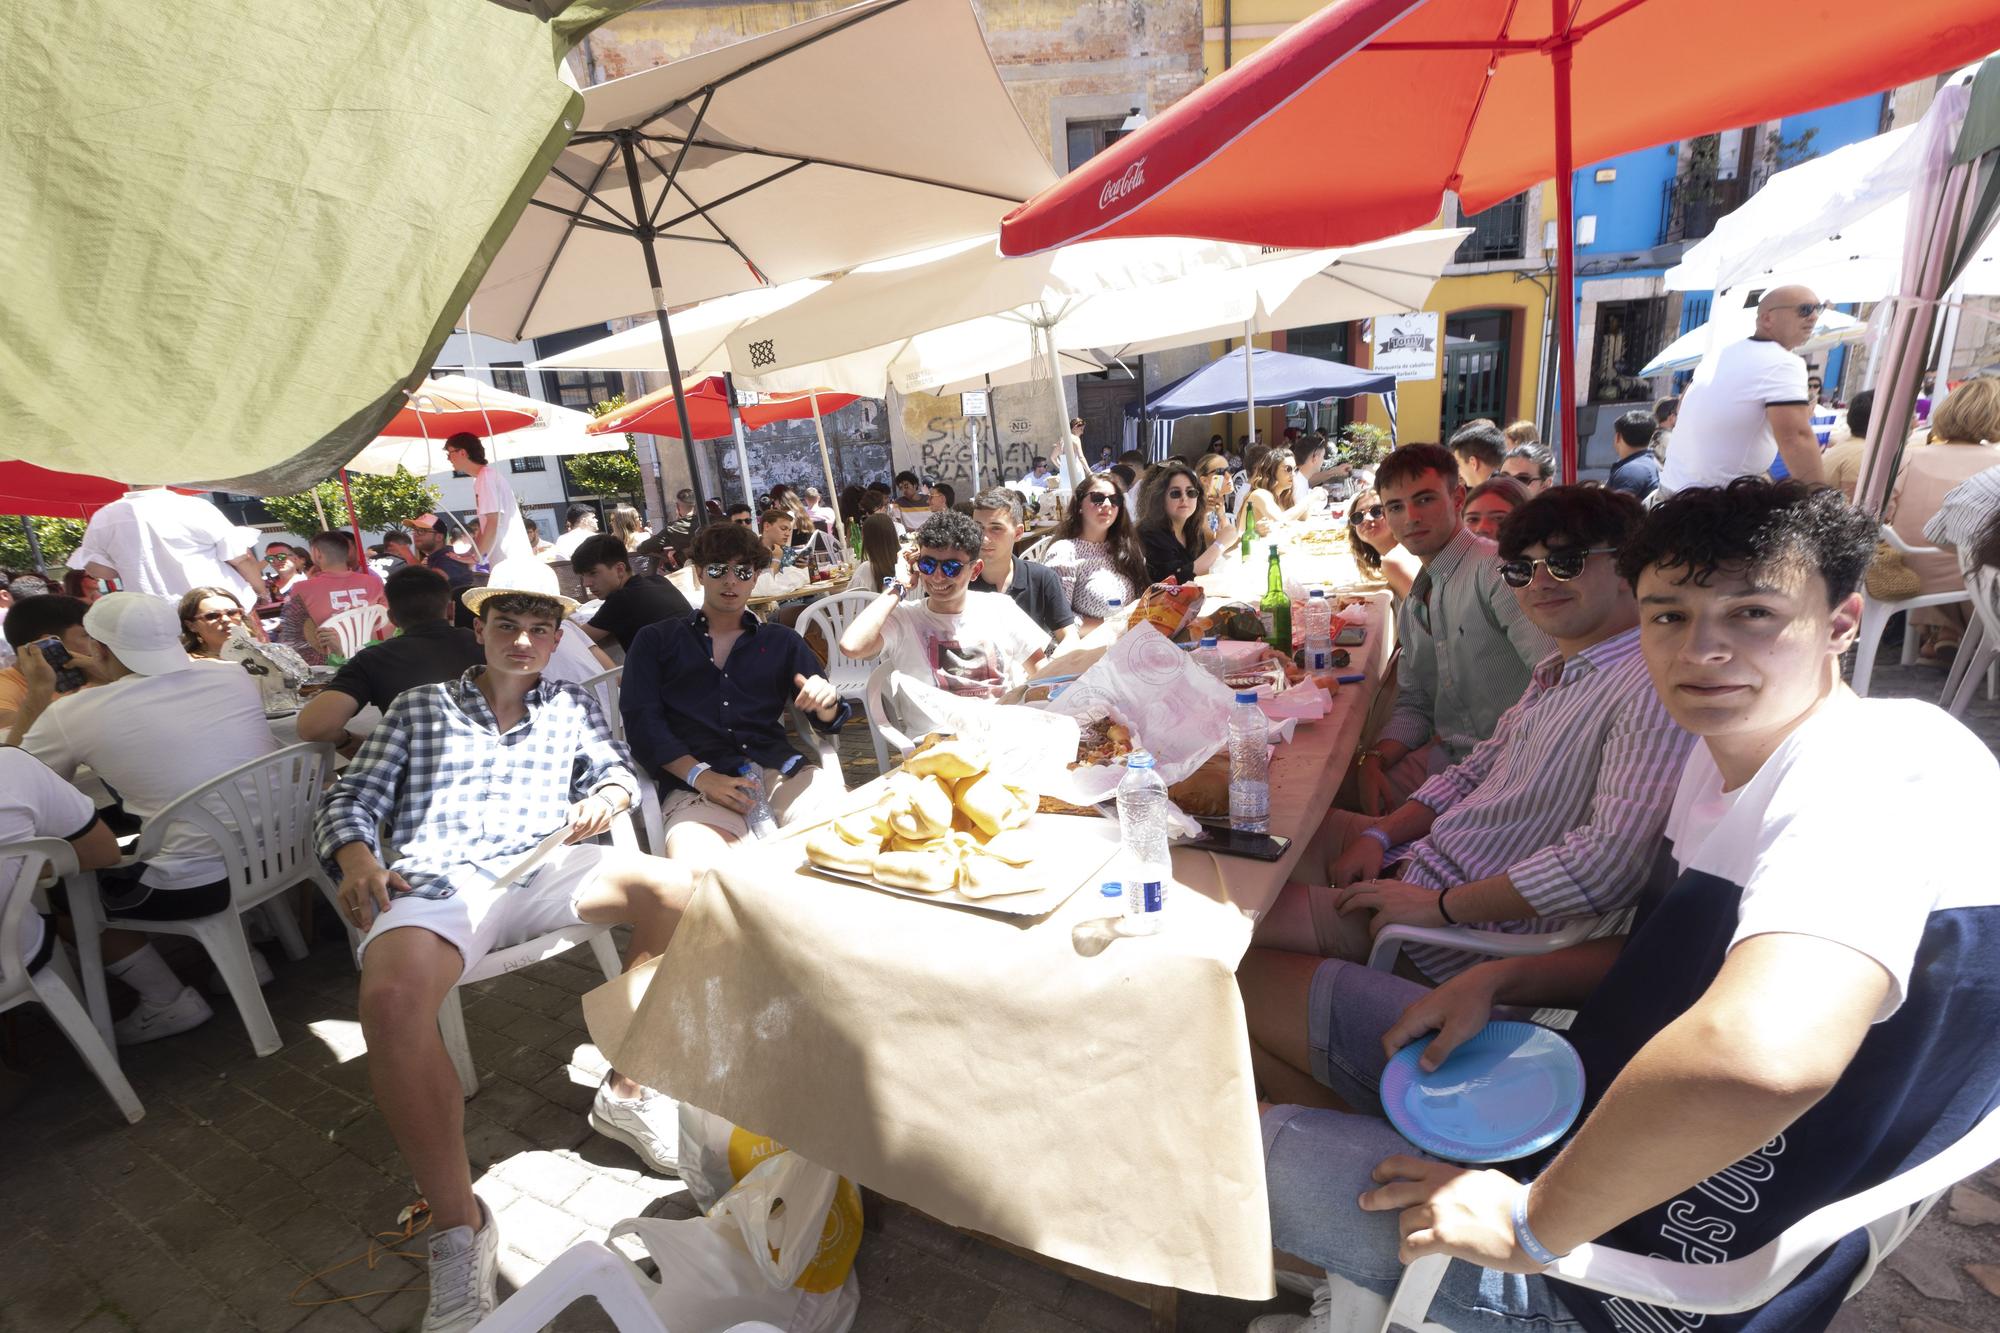 Grado hasta la bandera: lleno total en la comida en la calle de la villa moscona, más multitudinaria que nunca